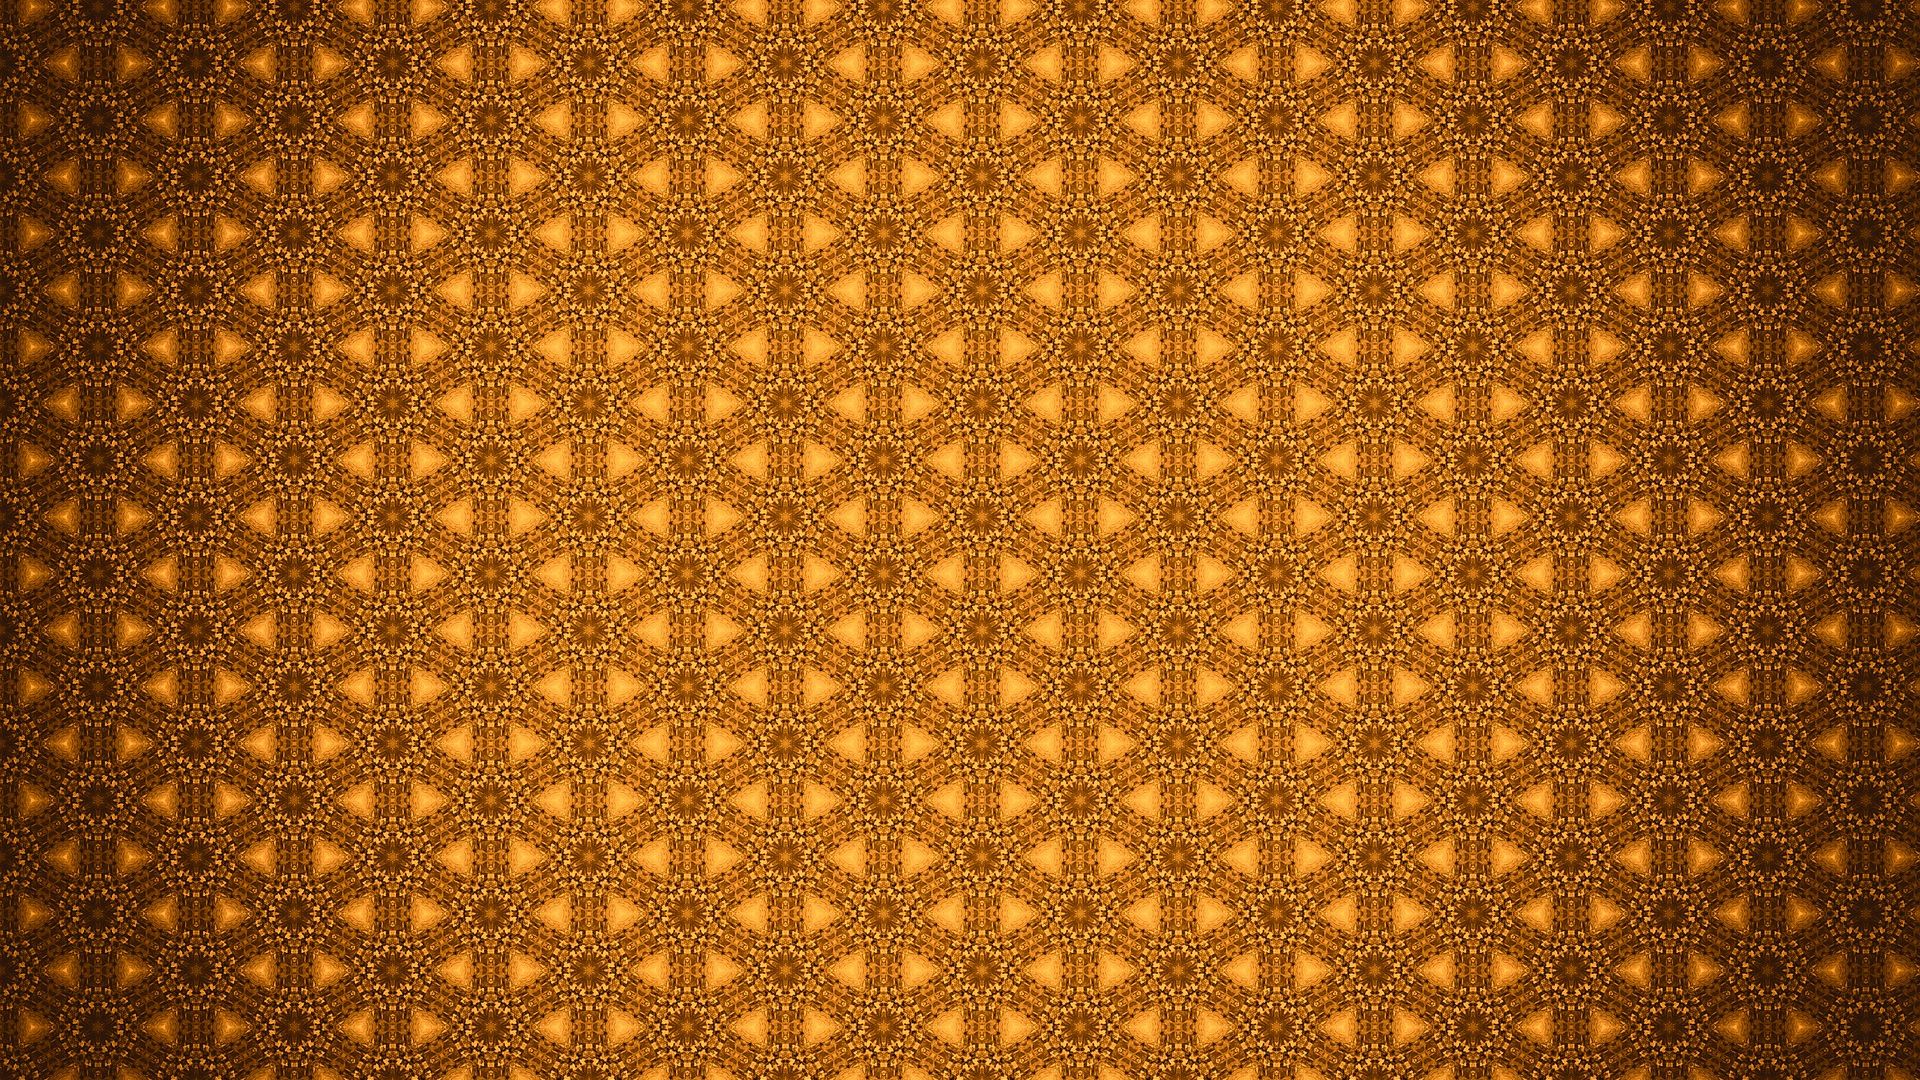 Wallpaper Circles, yellow pattern, abstract